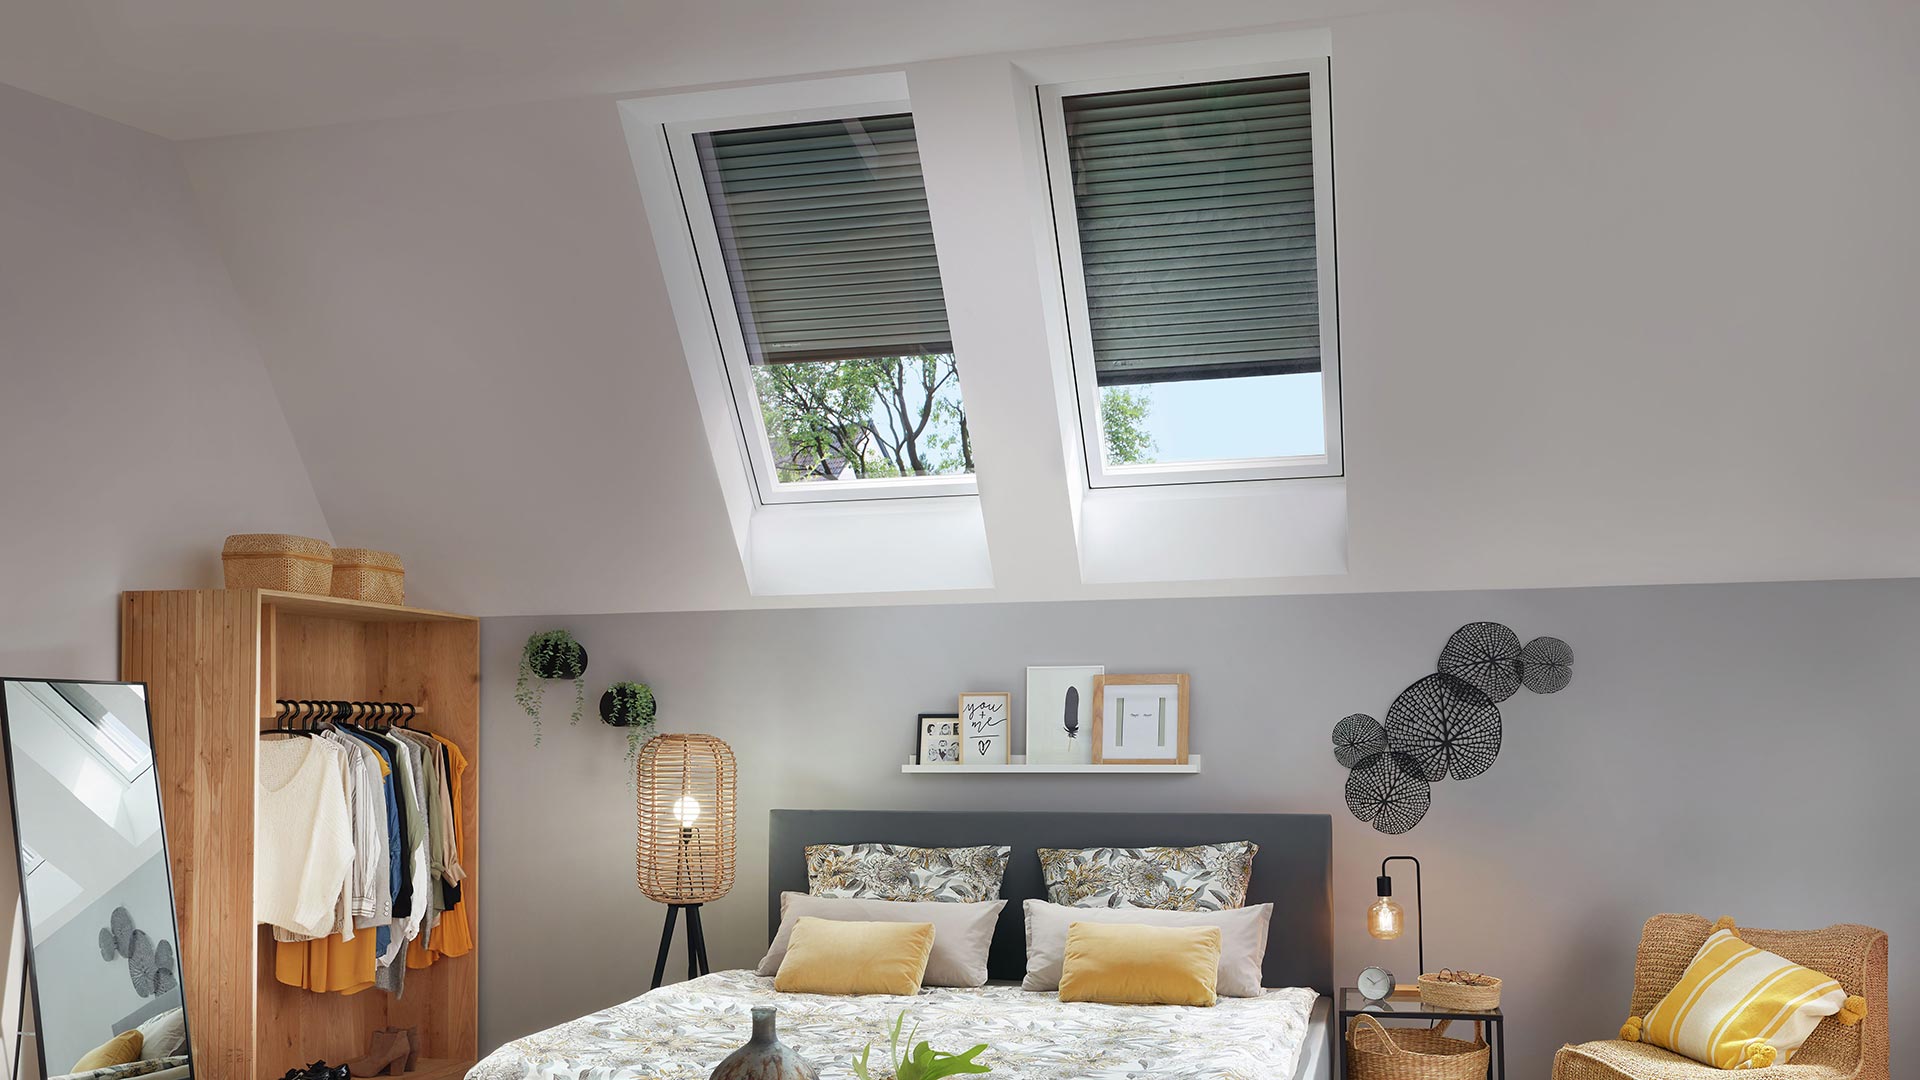 Blick ins Schlafzimmer mit Dachfenstern und Außenrollläden